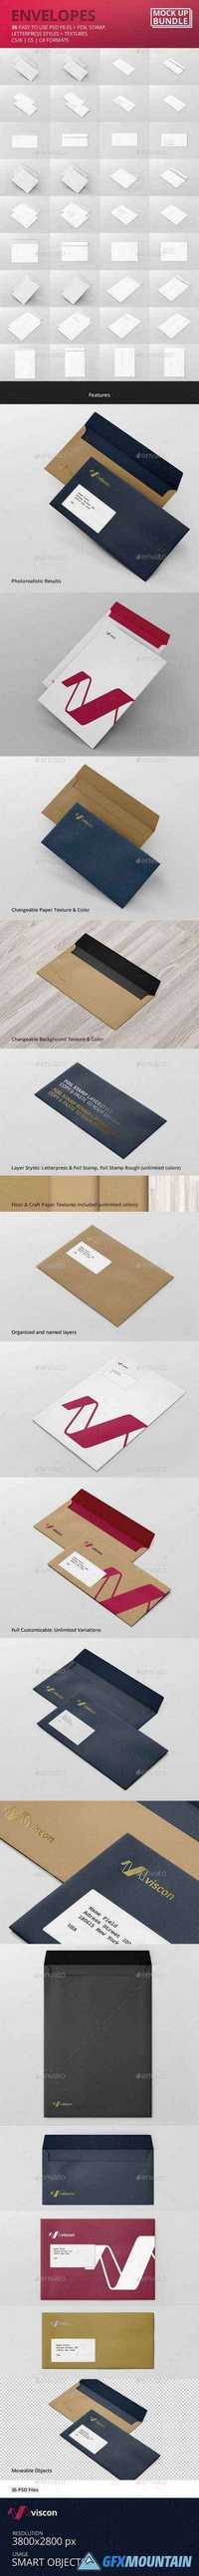 GraphicRiver - Envelopes Mock-Up Bundle 11625876